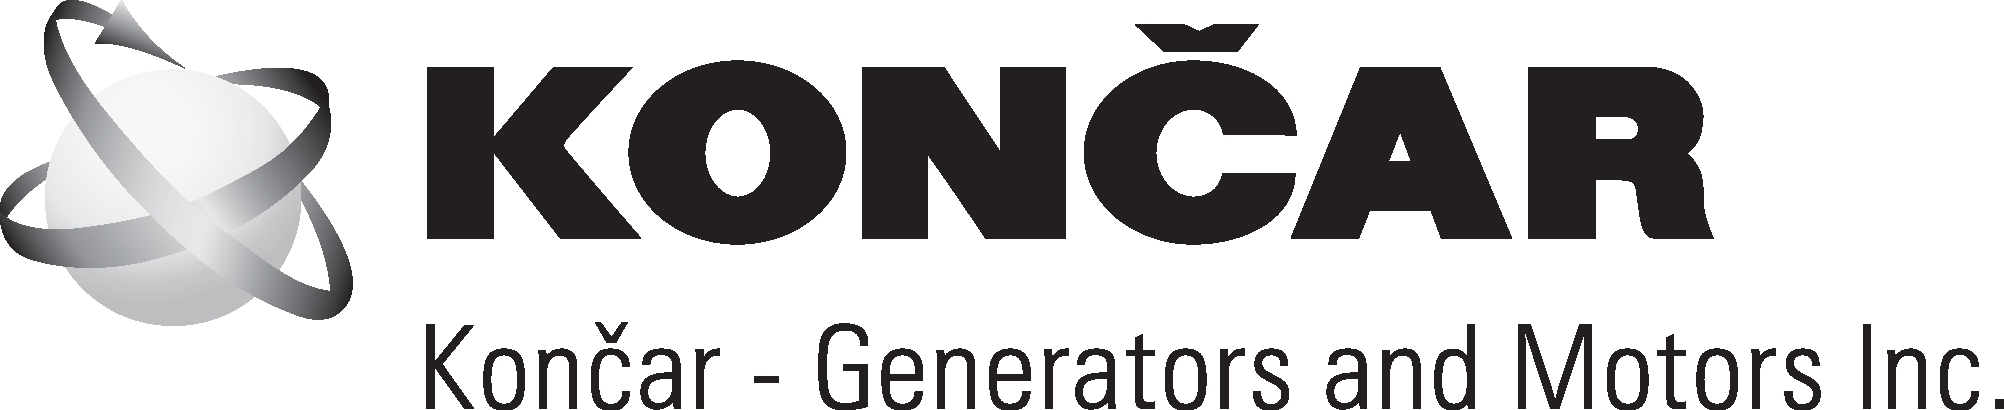 Koncar - Generations and Motors Inc.